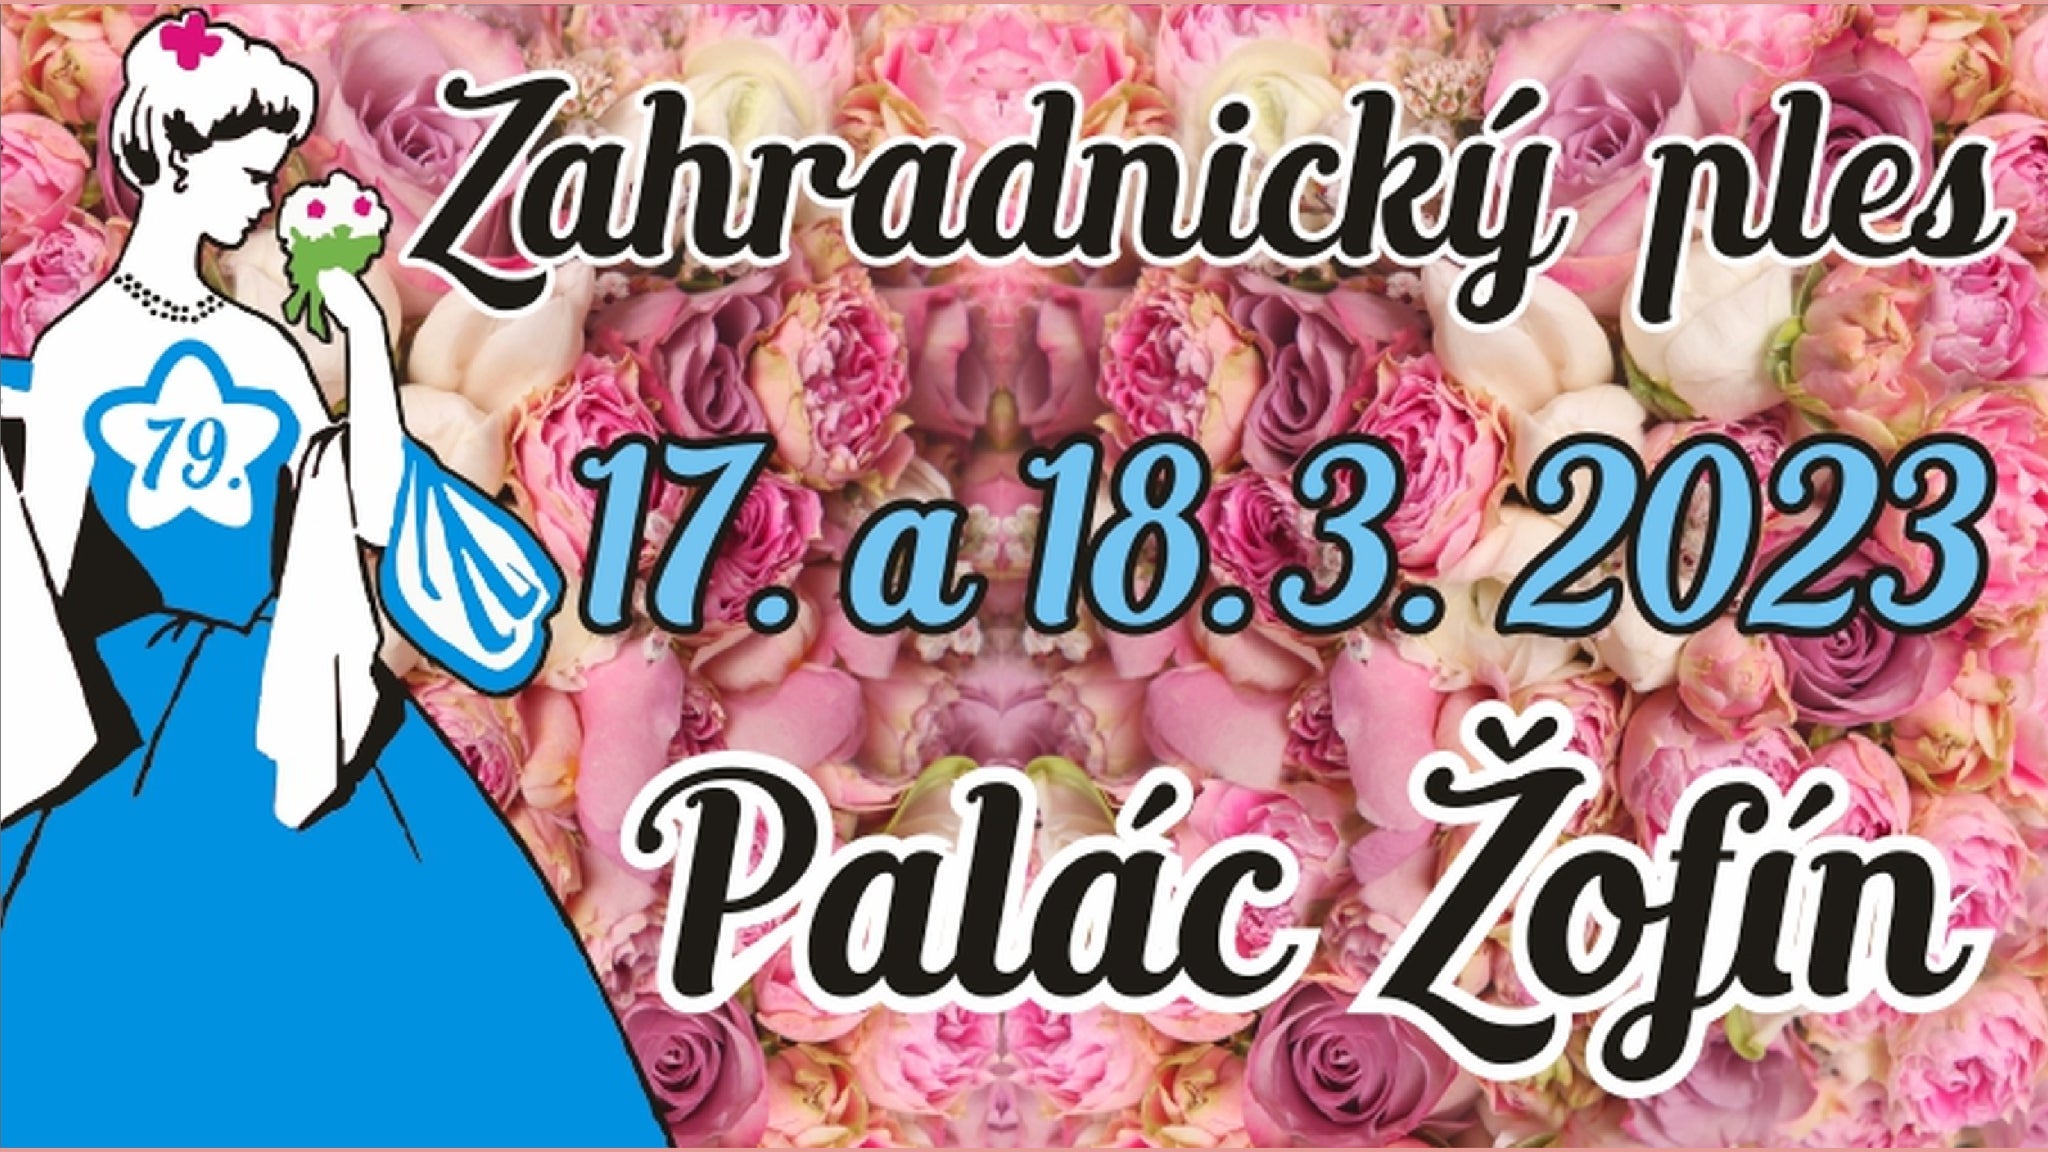 79. reprezentační Zahradnický ples- Praha -Palác Žofín Praha 1 Slovanský ostrov 226, Praha 1 11000